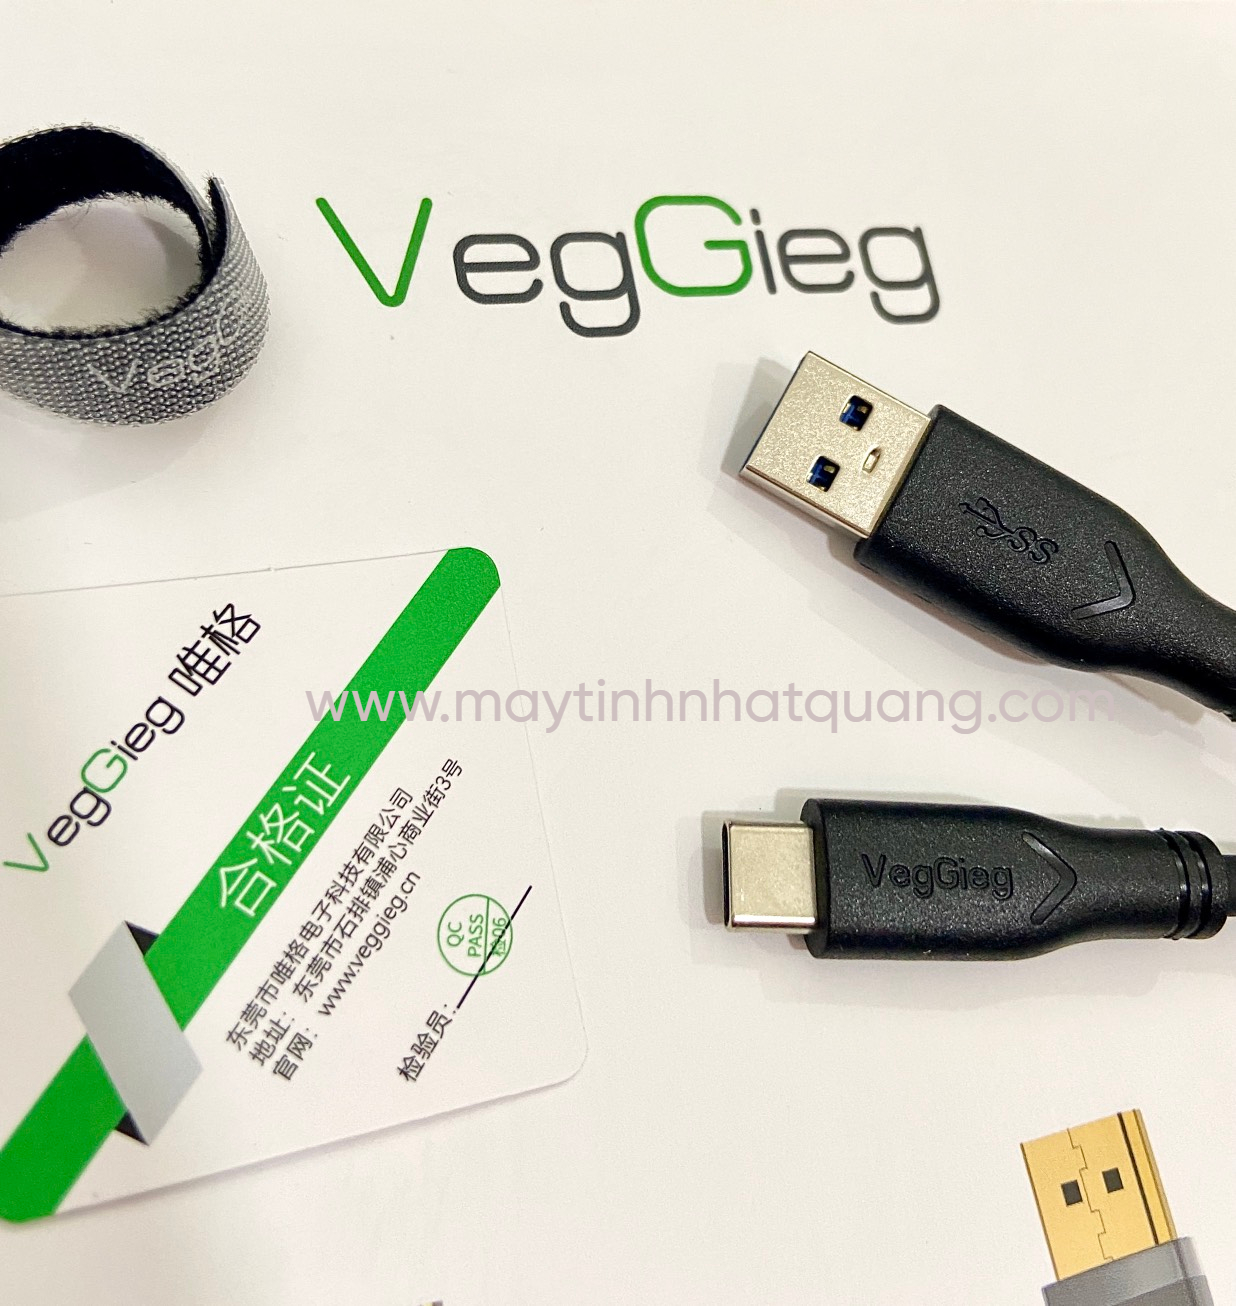 Cáp dữ liệu USB 3.0 sang type C Veggieg VU323